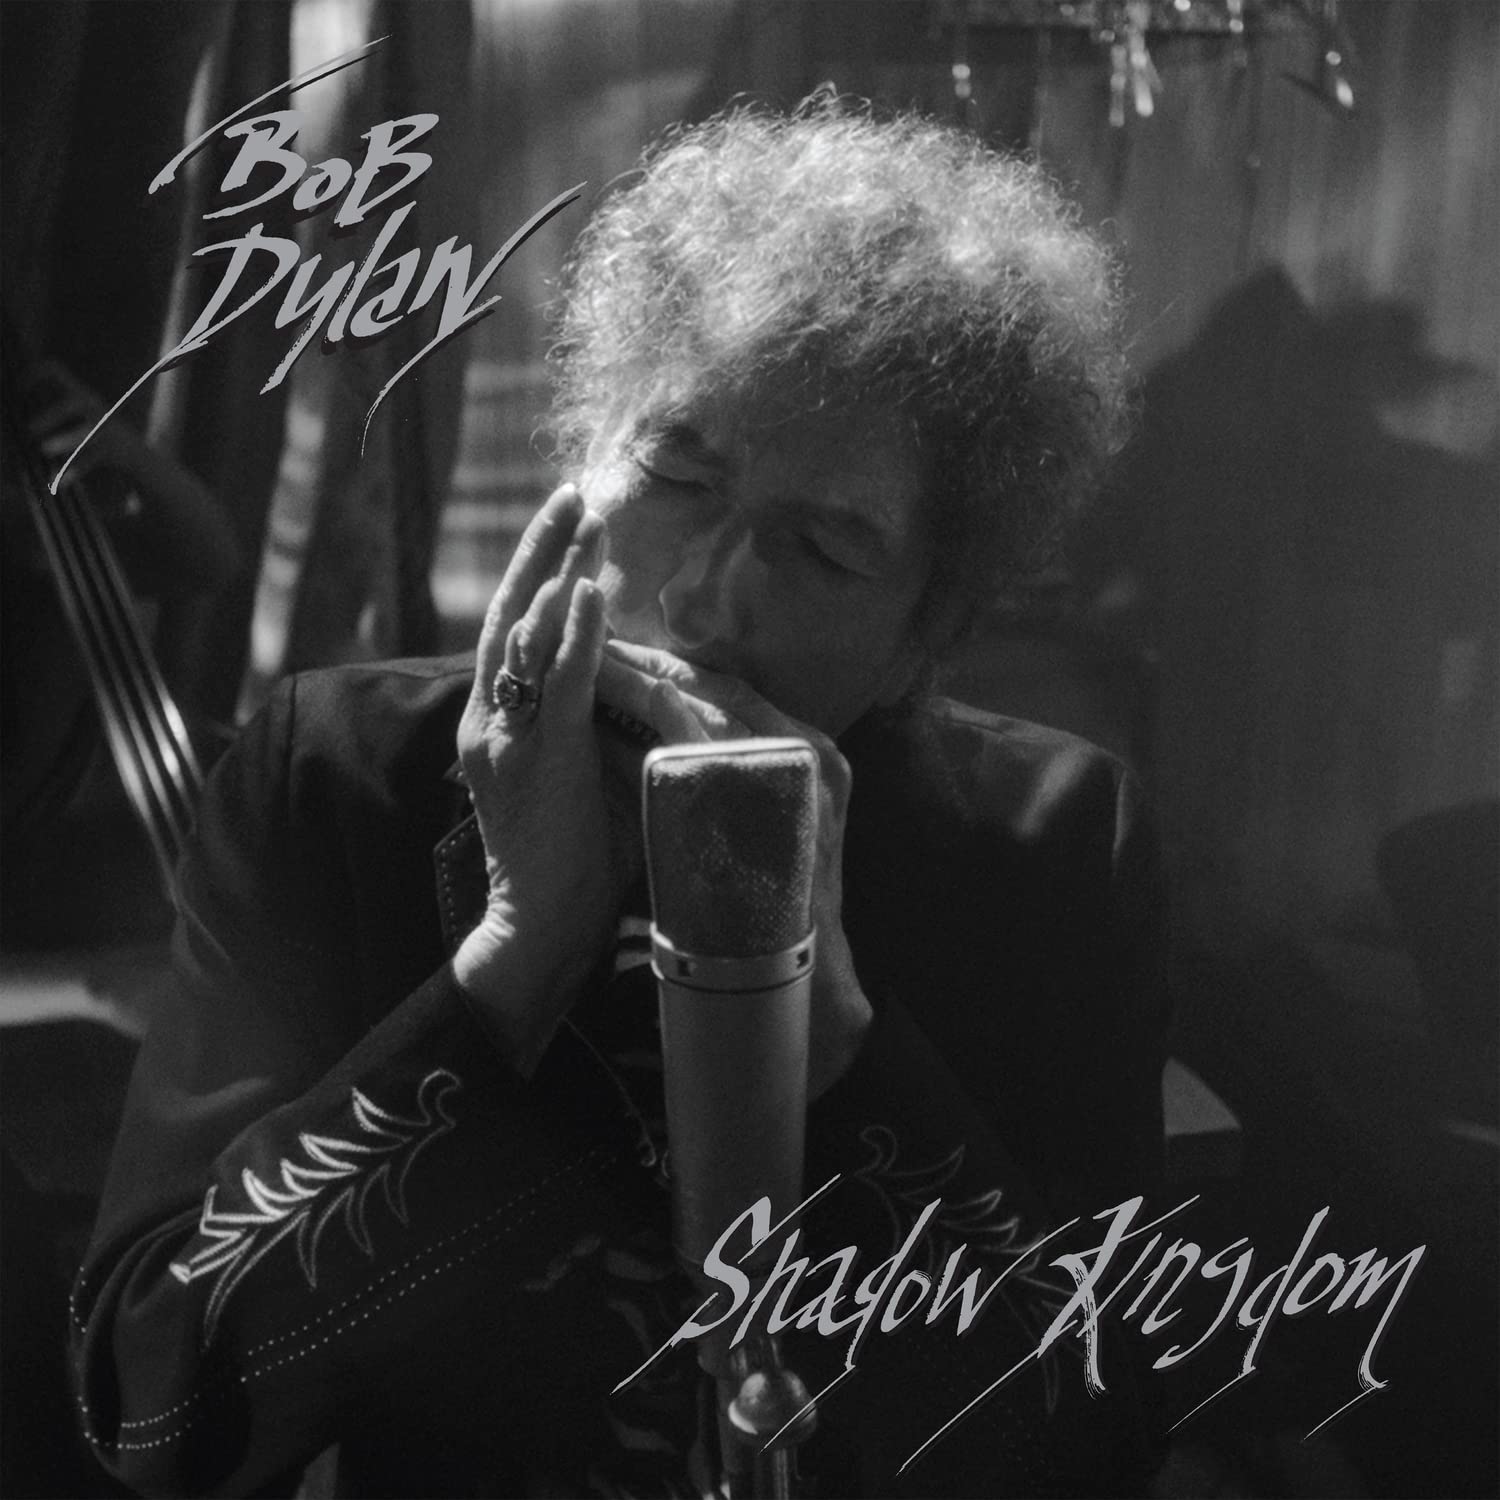 Vinile Bob Dylan - Shadow Kingdom NUOVO SIGILLATO, EDIZIONE DEL 06/01/2023 SUBITO DISPONIBILE